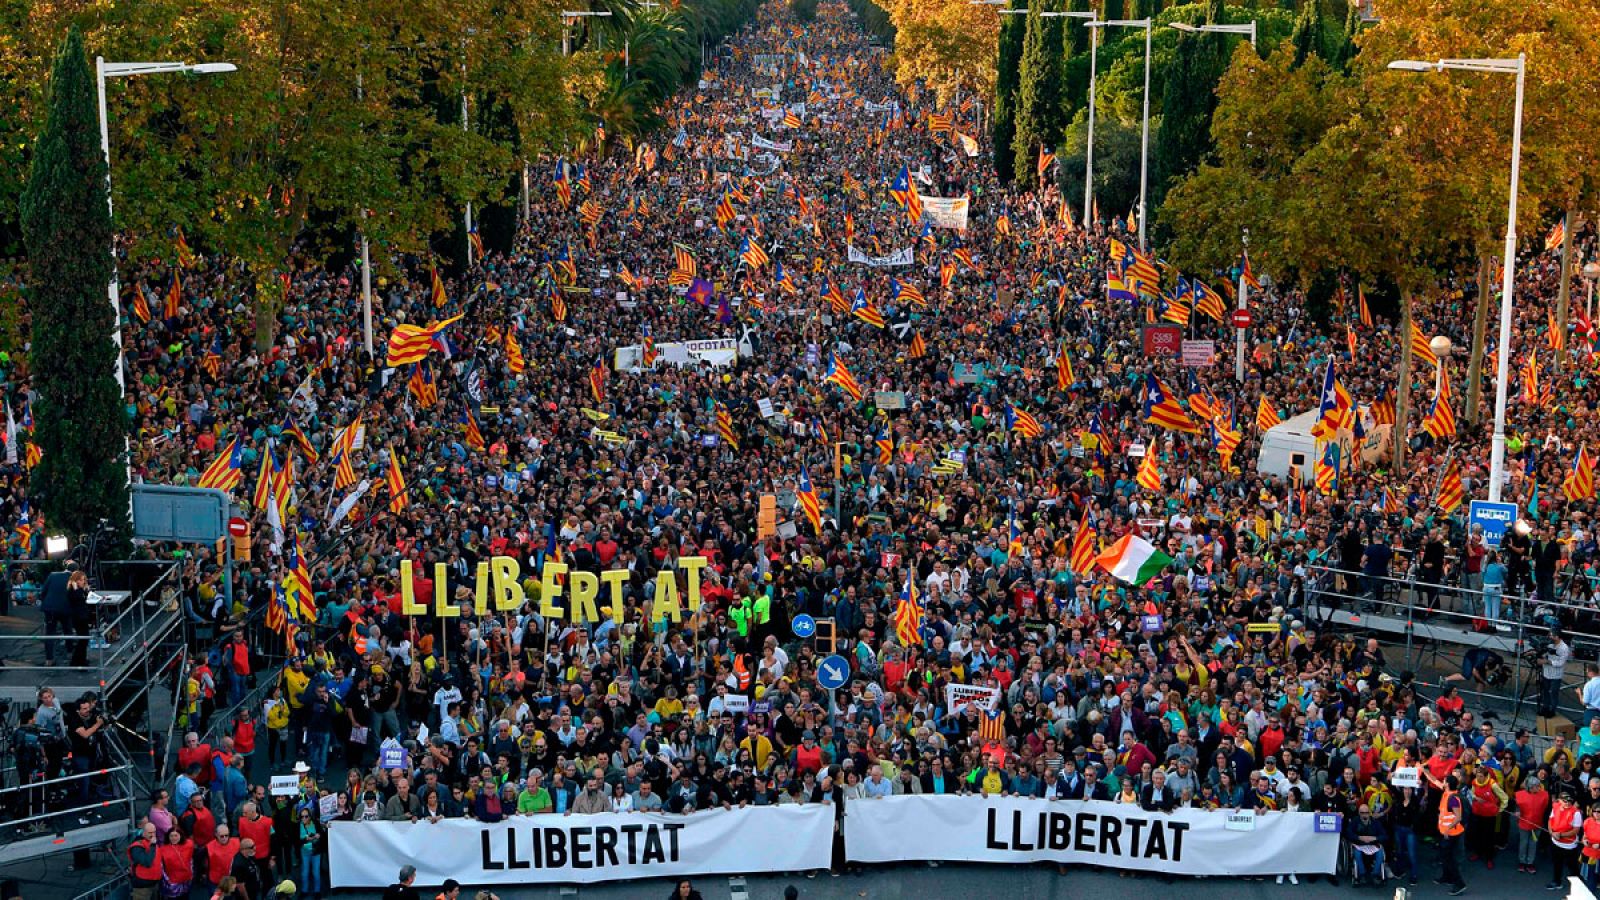 Sentencia procés: Multitudinaria manifestación en Barcelona por la "libertad" y el "derecho de autodeterminación"